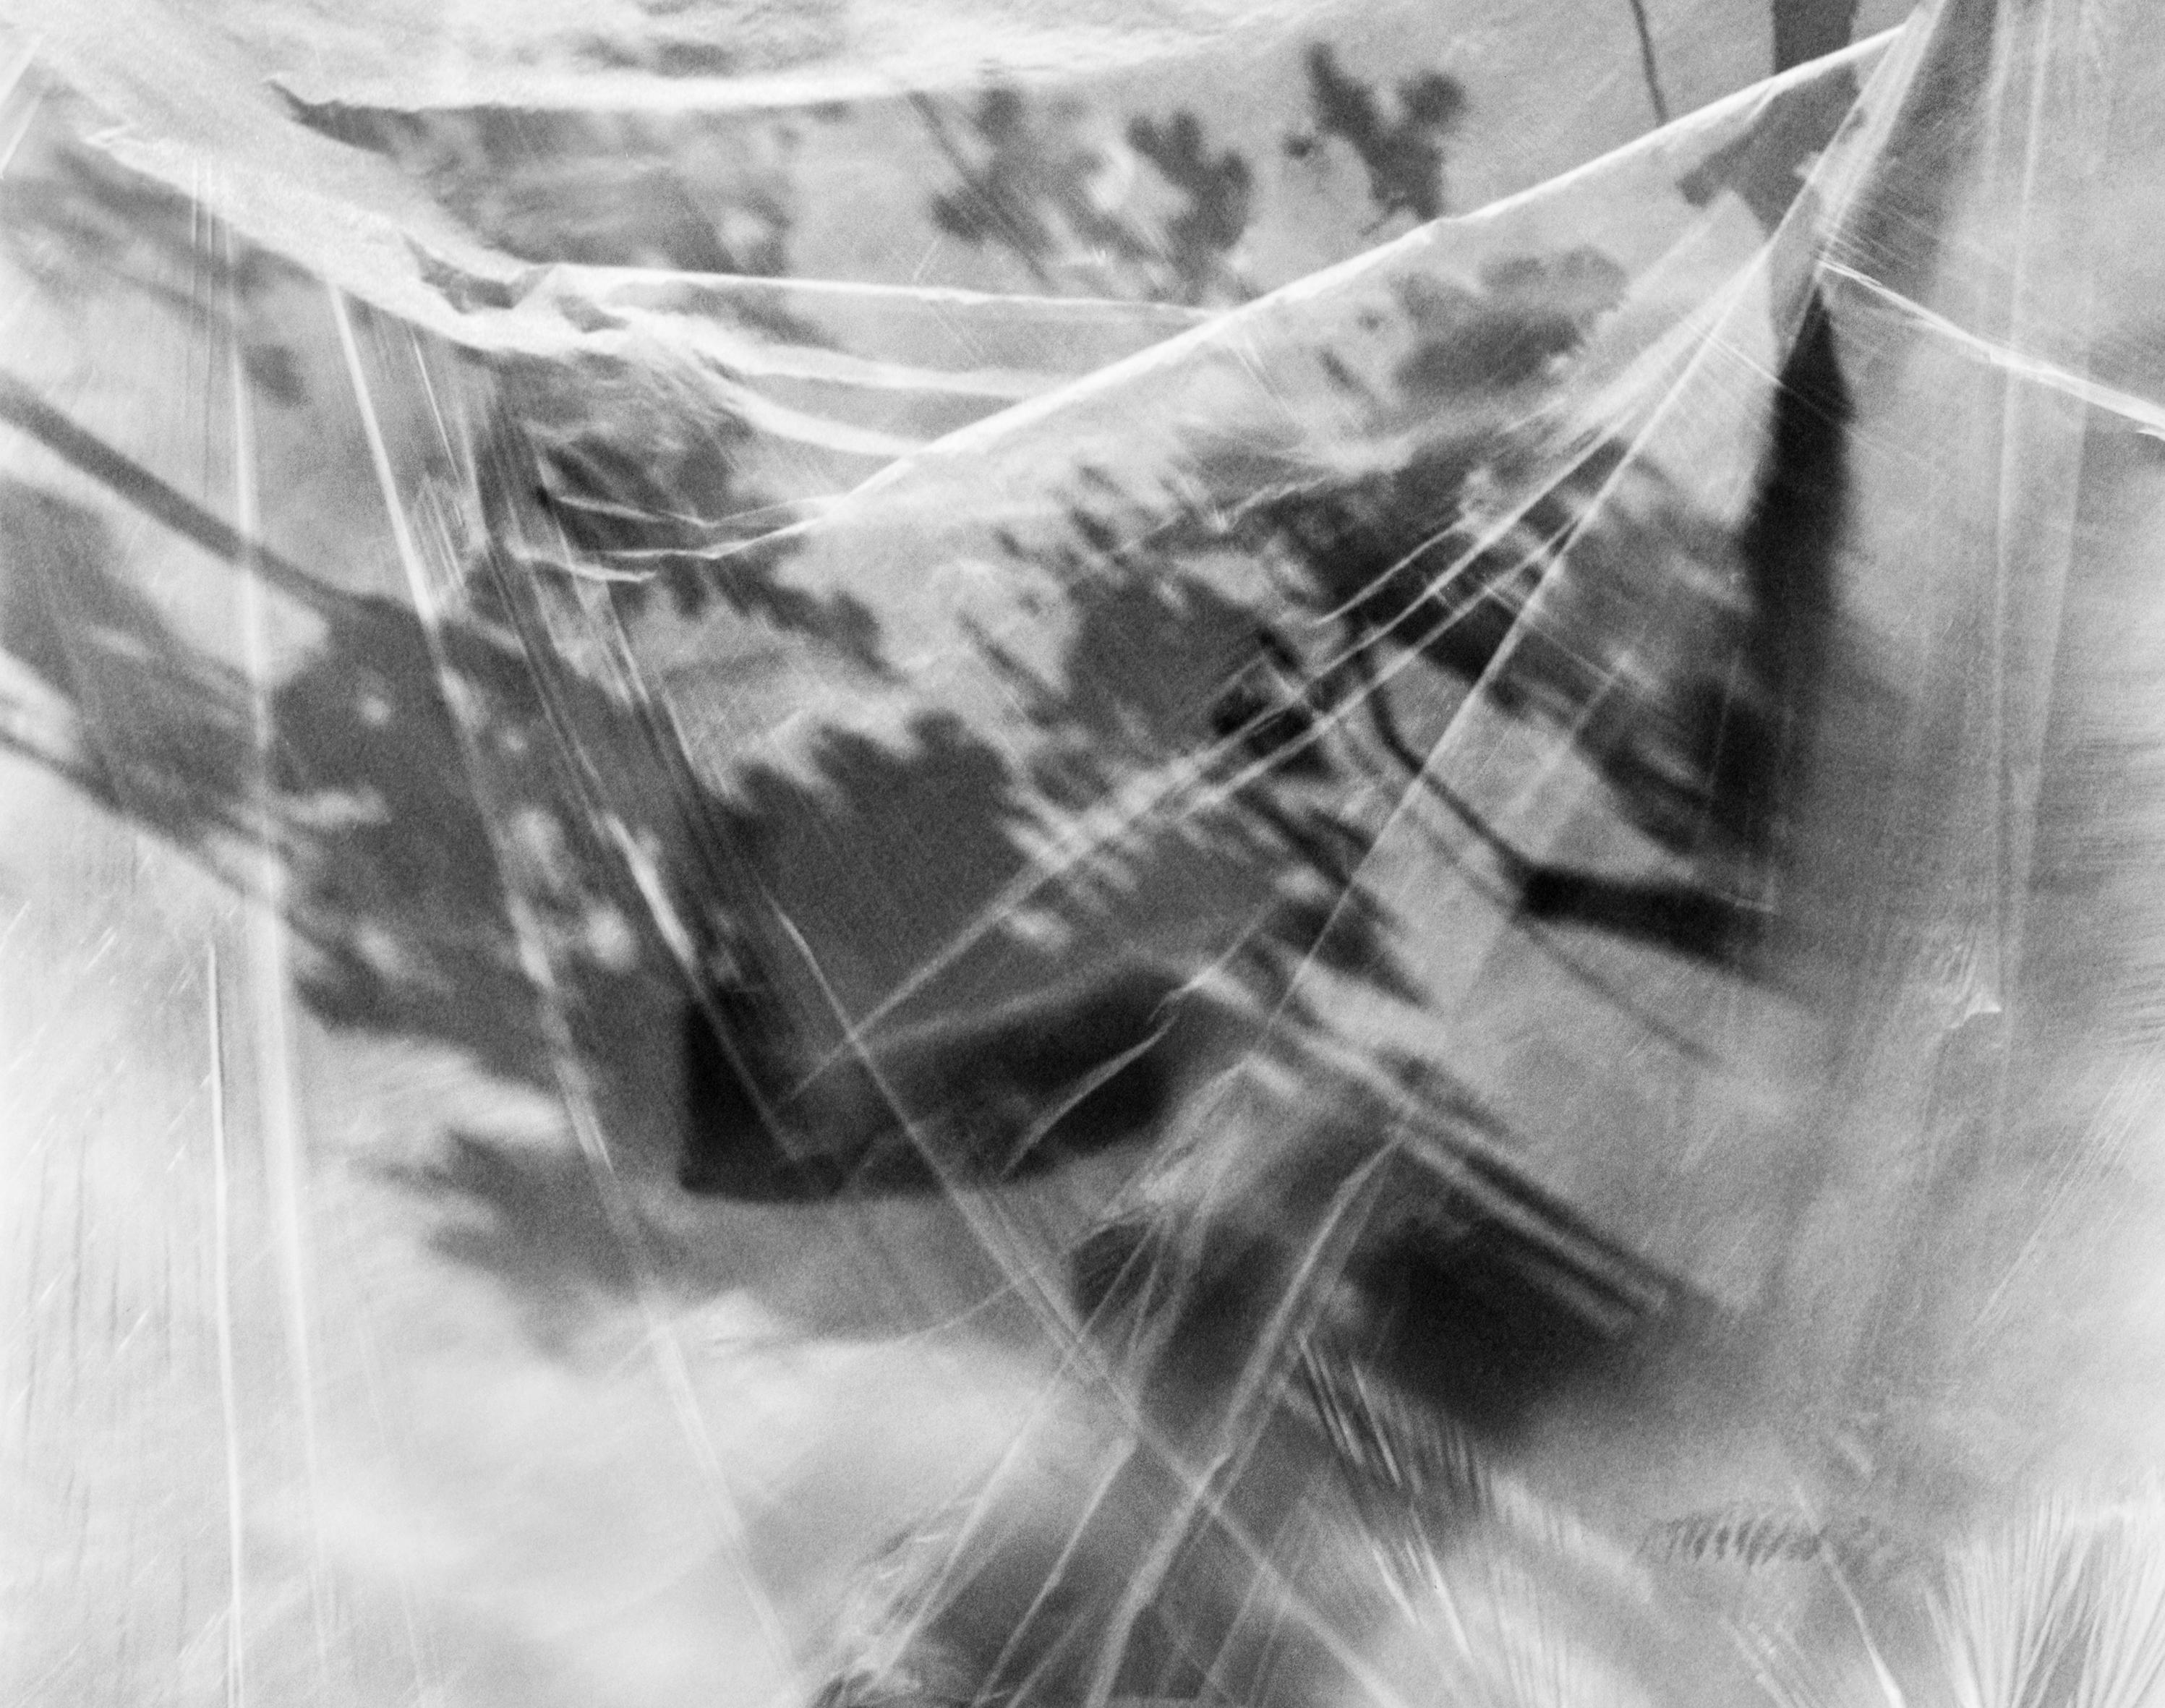 Ugne Pouwell Black and White Photograph – Undo No.2 - Analogue Schwarzer und weißer abstrakter Expressionismus, limitierte Auflage 10 Stück